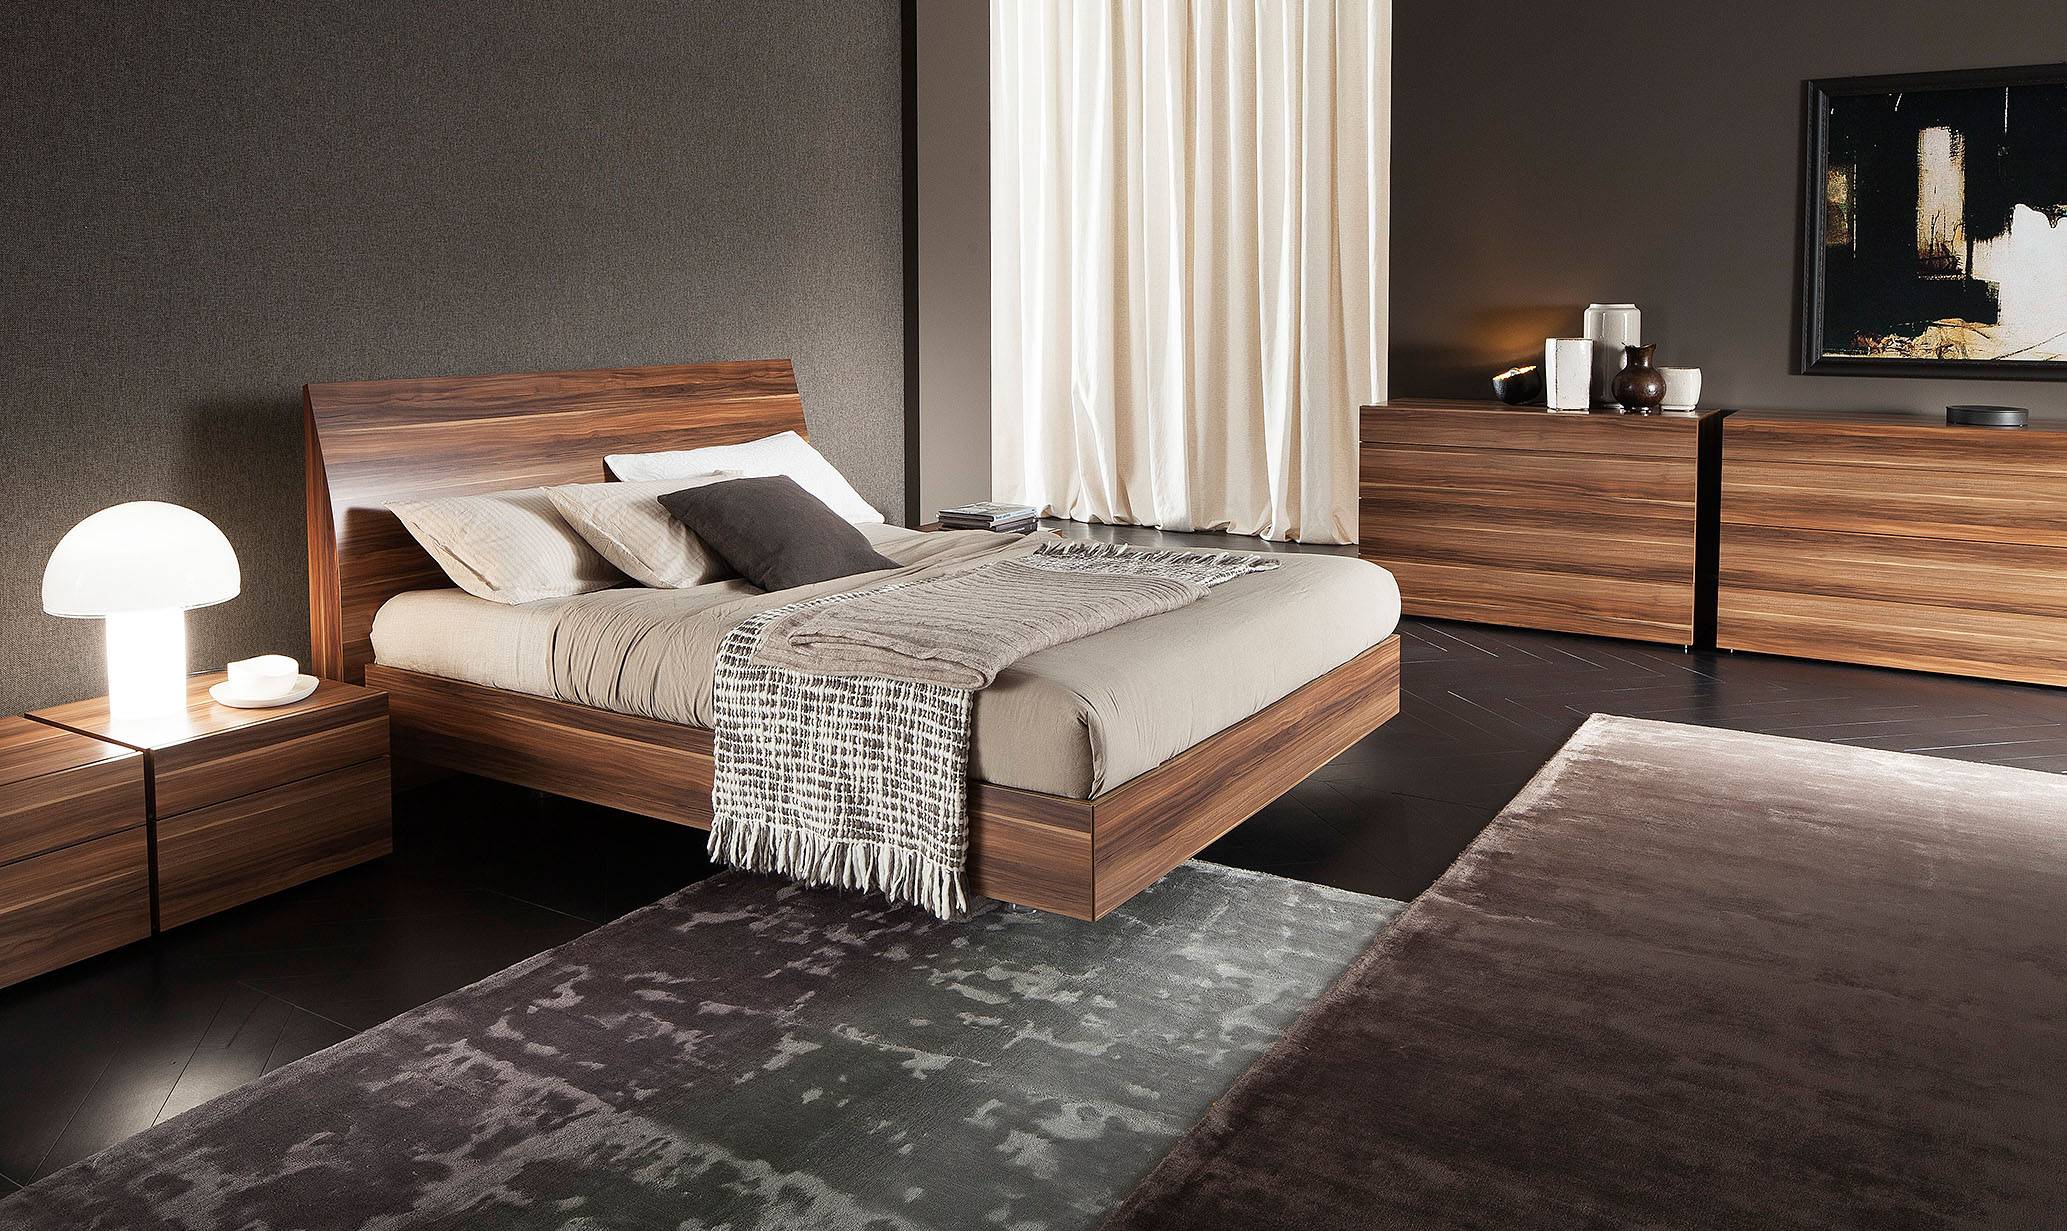 bedroom ideas wooden furniture